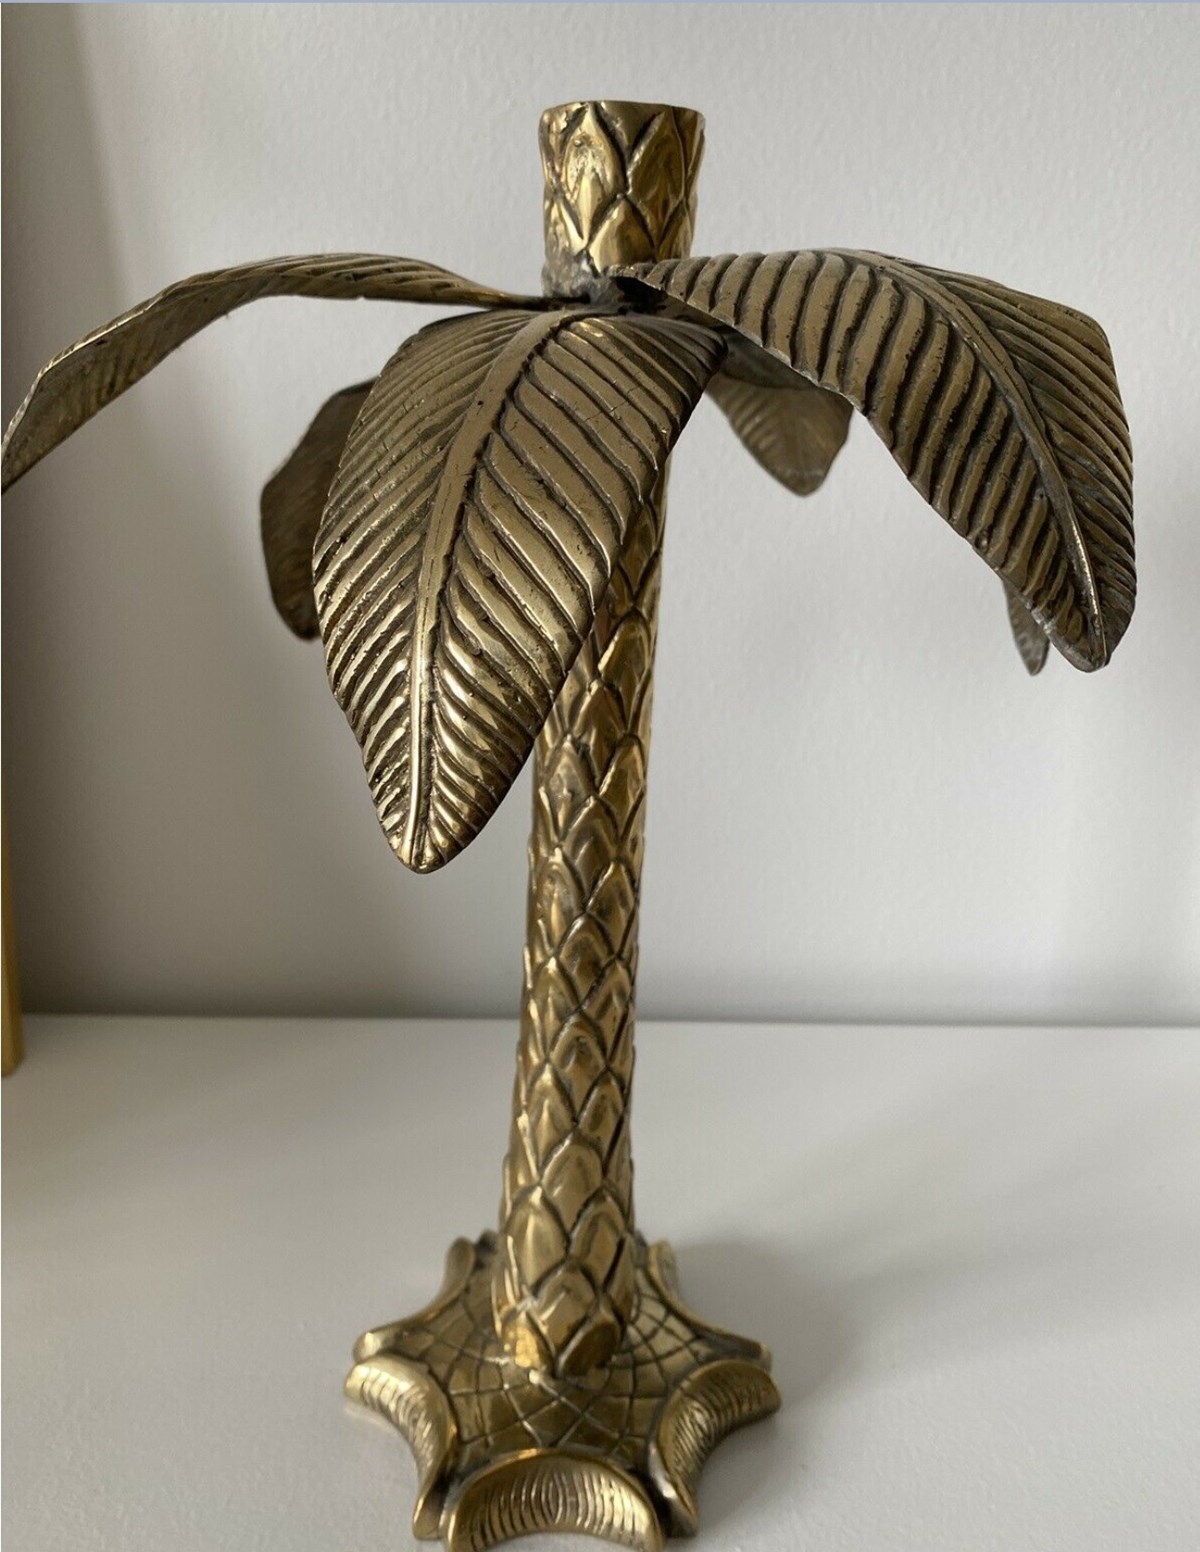 I Københavns S har Sussane denne guld, palme-lysestage til salg for 450 kroner